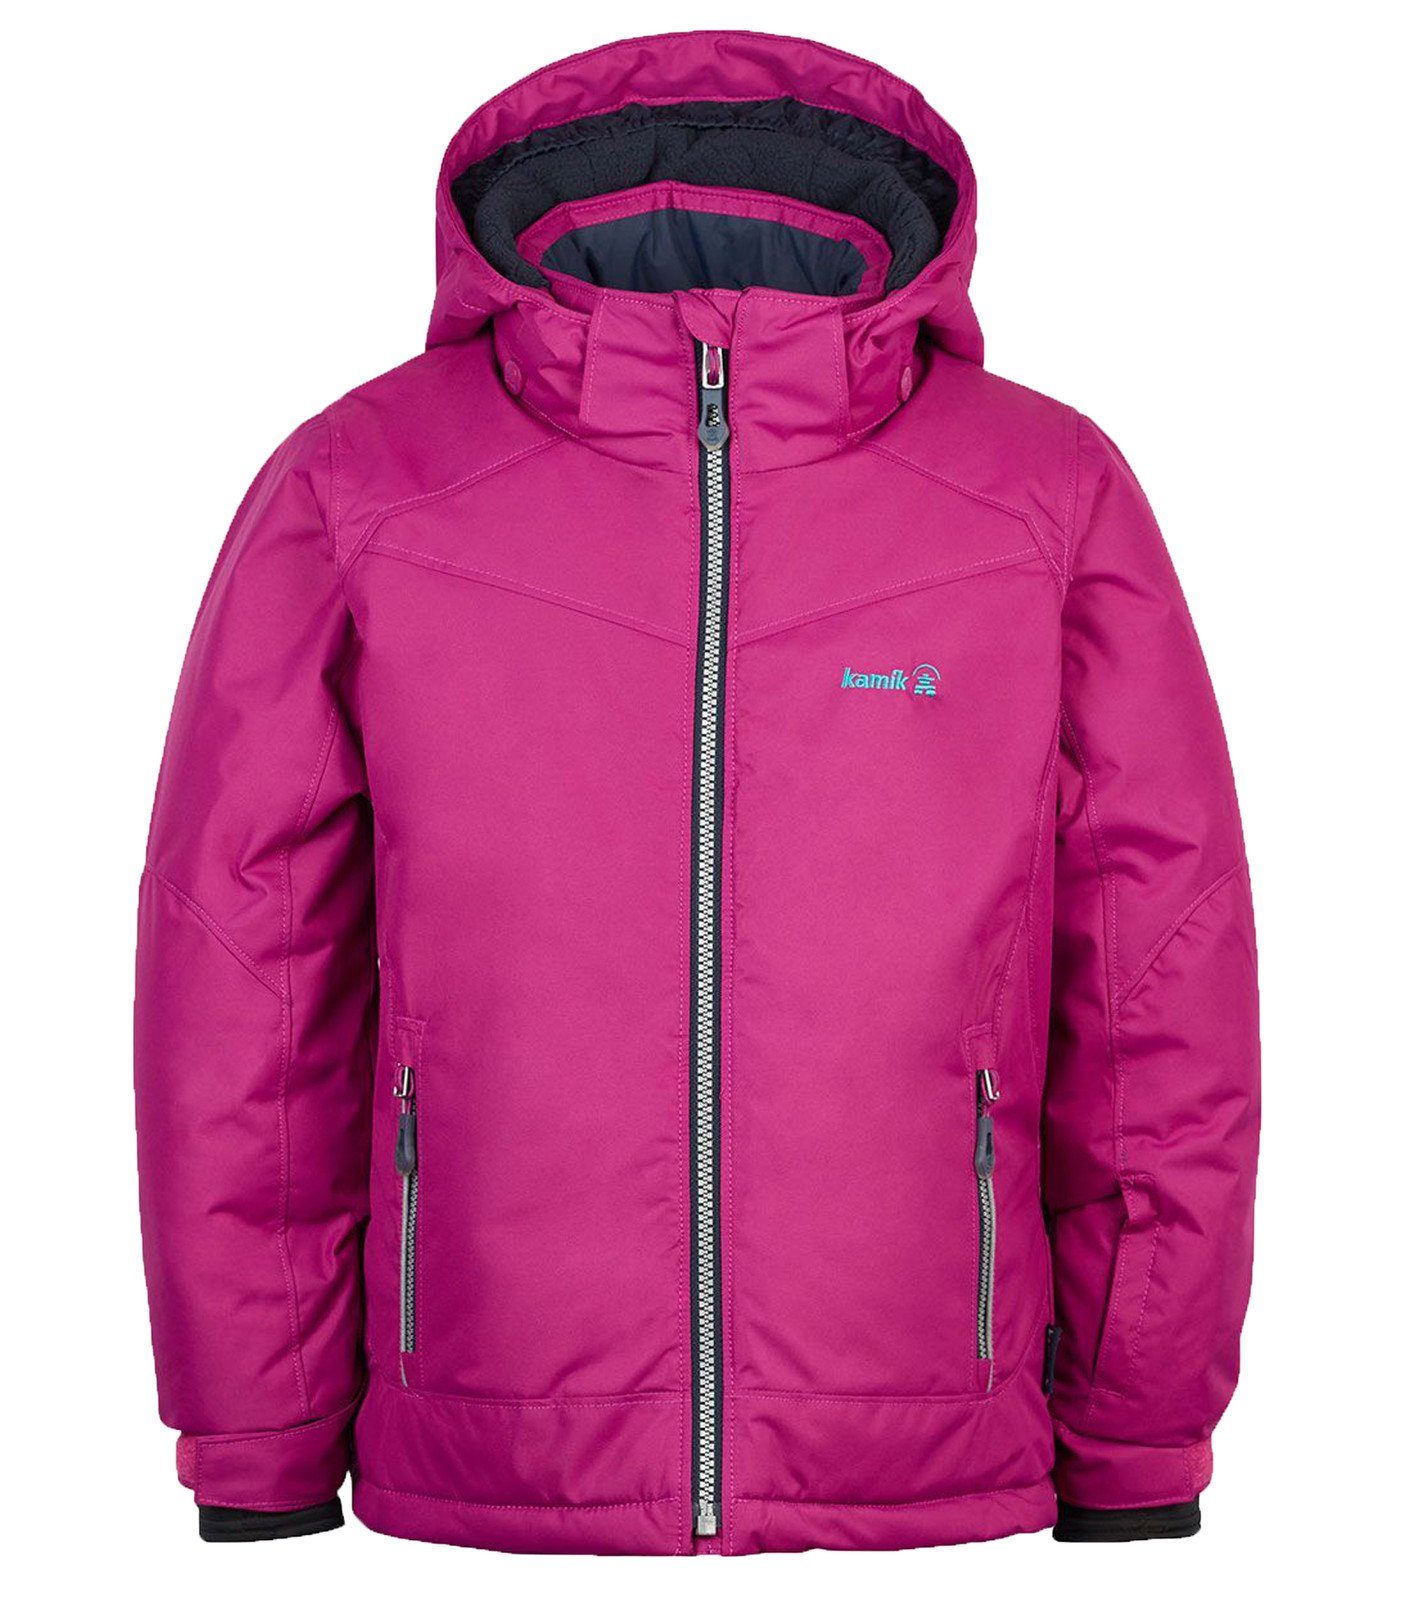 Mädchen sportliche Winter-Jacke aktive Wander-Jacke für 2 Berry Schnee-Jacke Skijacke Aria Kamik Kinder kamik